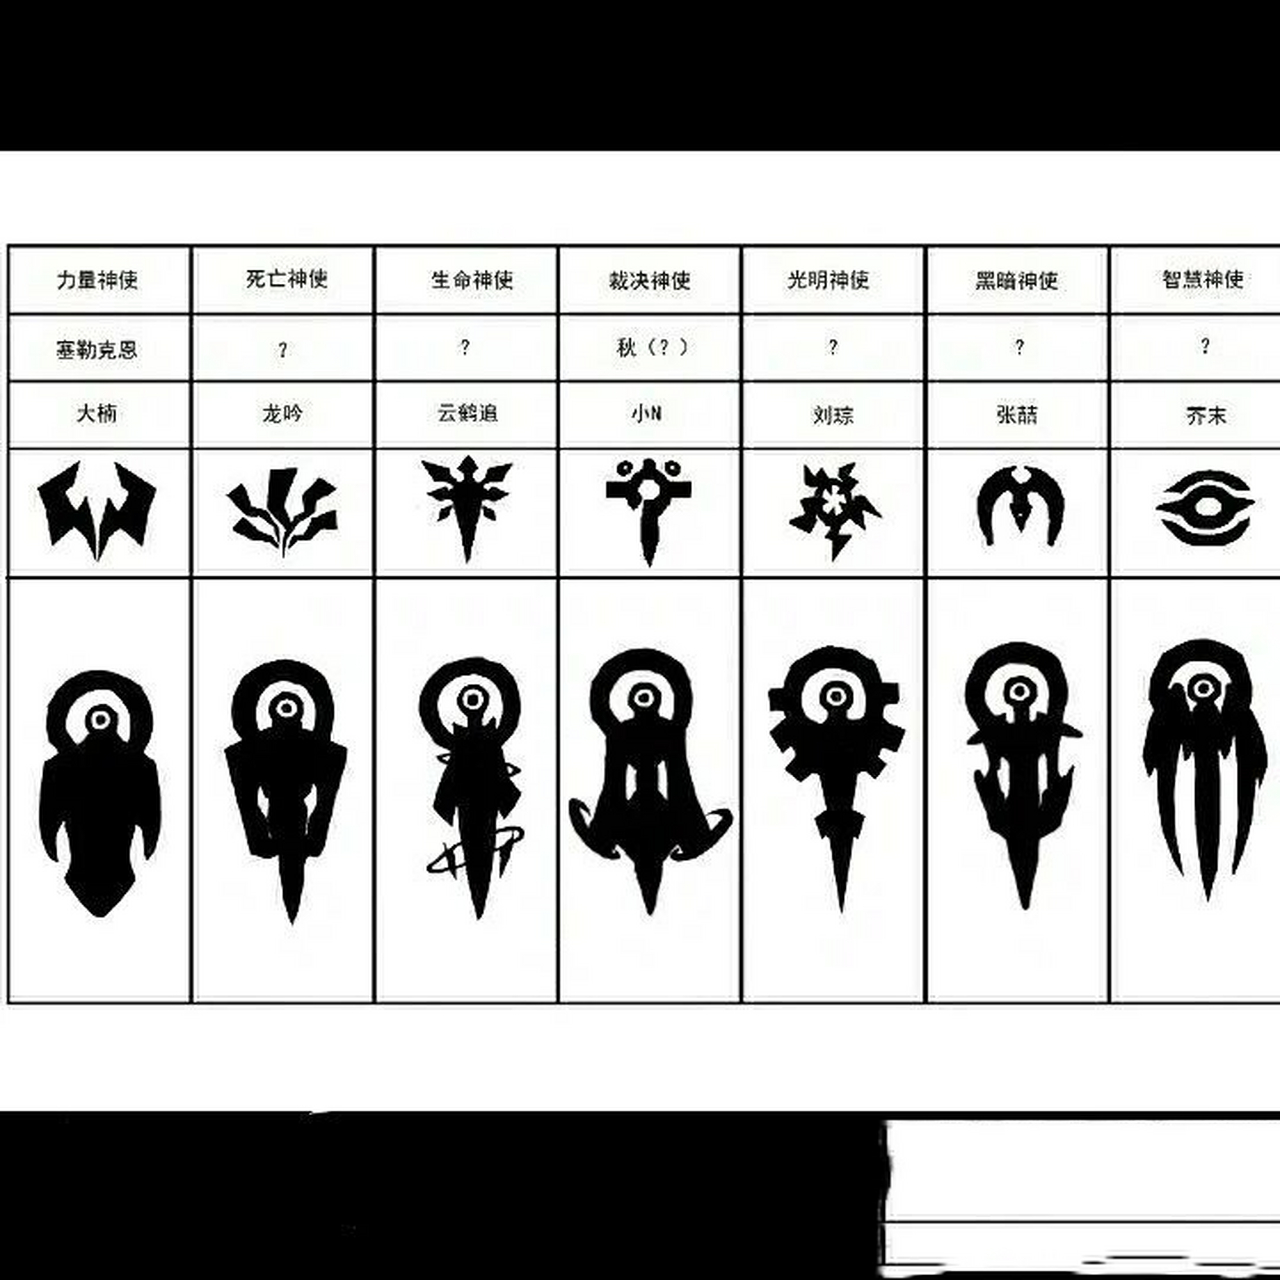 凹凸世界七神使的名字图片